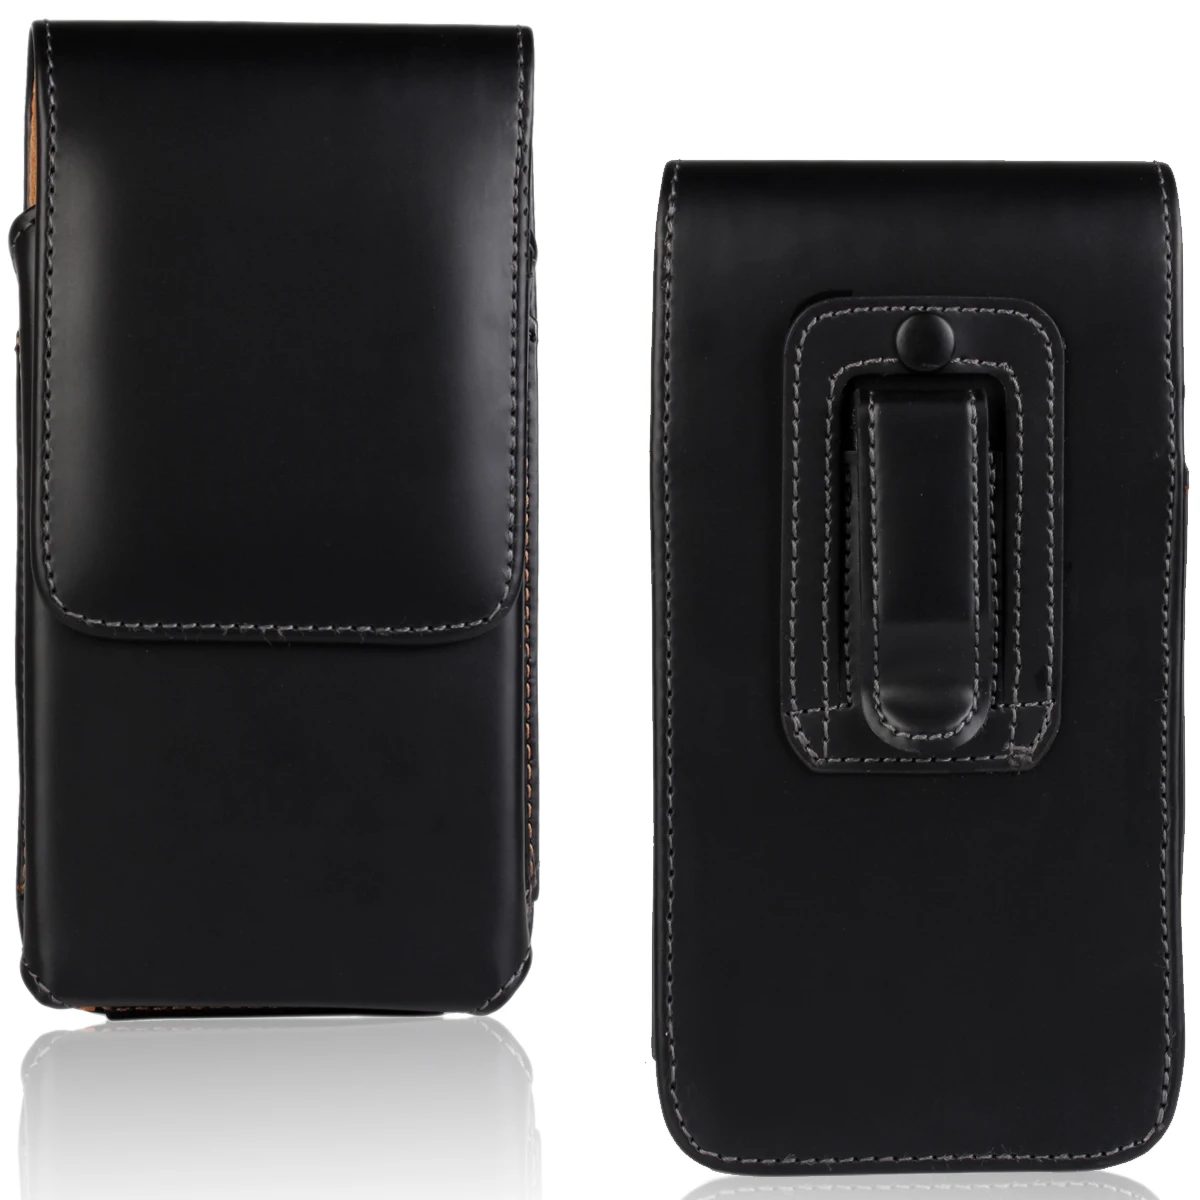 Универсальный чехол для телефона из натуральной кожи с зажимом для ремня для IPhone X 8 7 Plus 6s S8 Vernee Thor Oukitel K6000 Plus/Blackview P2 Lite - Цвет: plain weave2